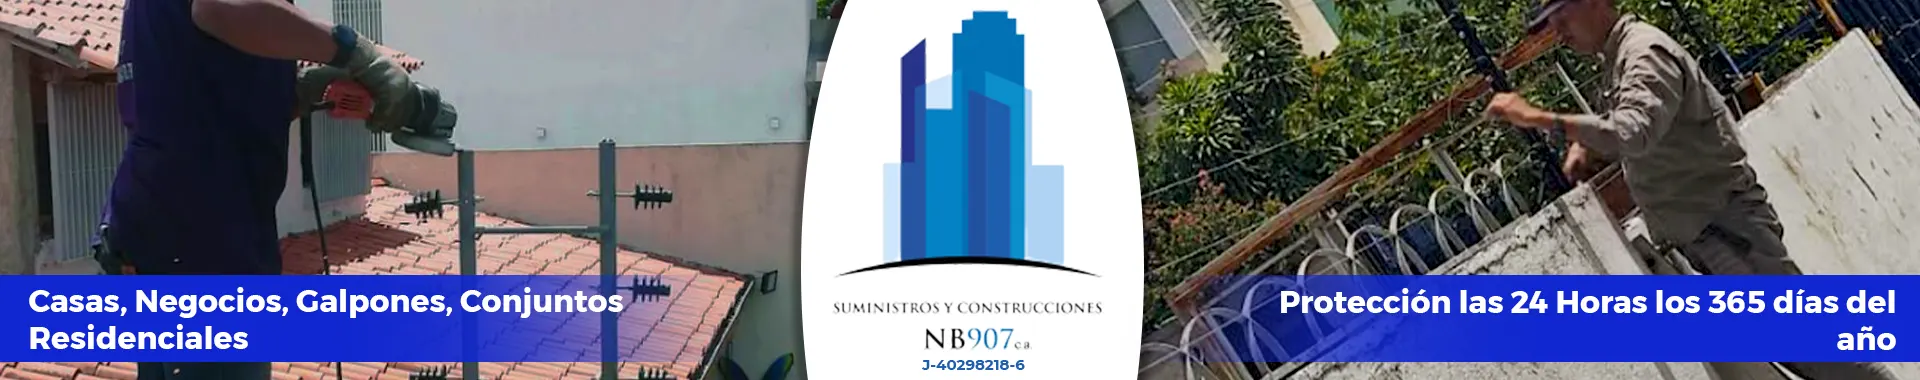 Imagen 2 del perfil de Suministros y Construcciones Nb907